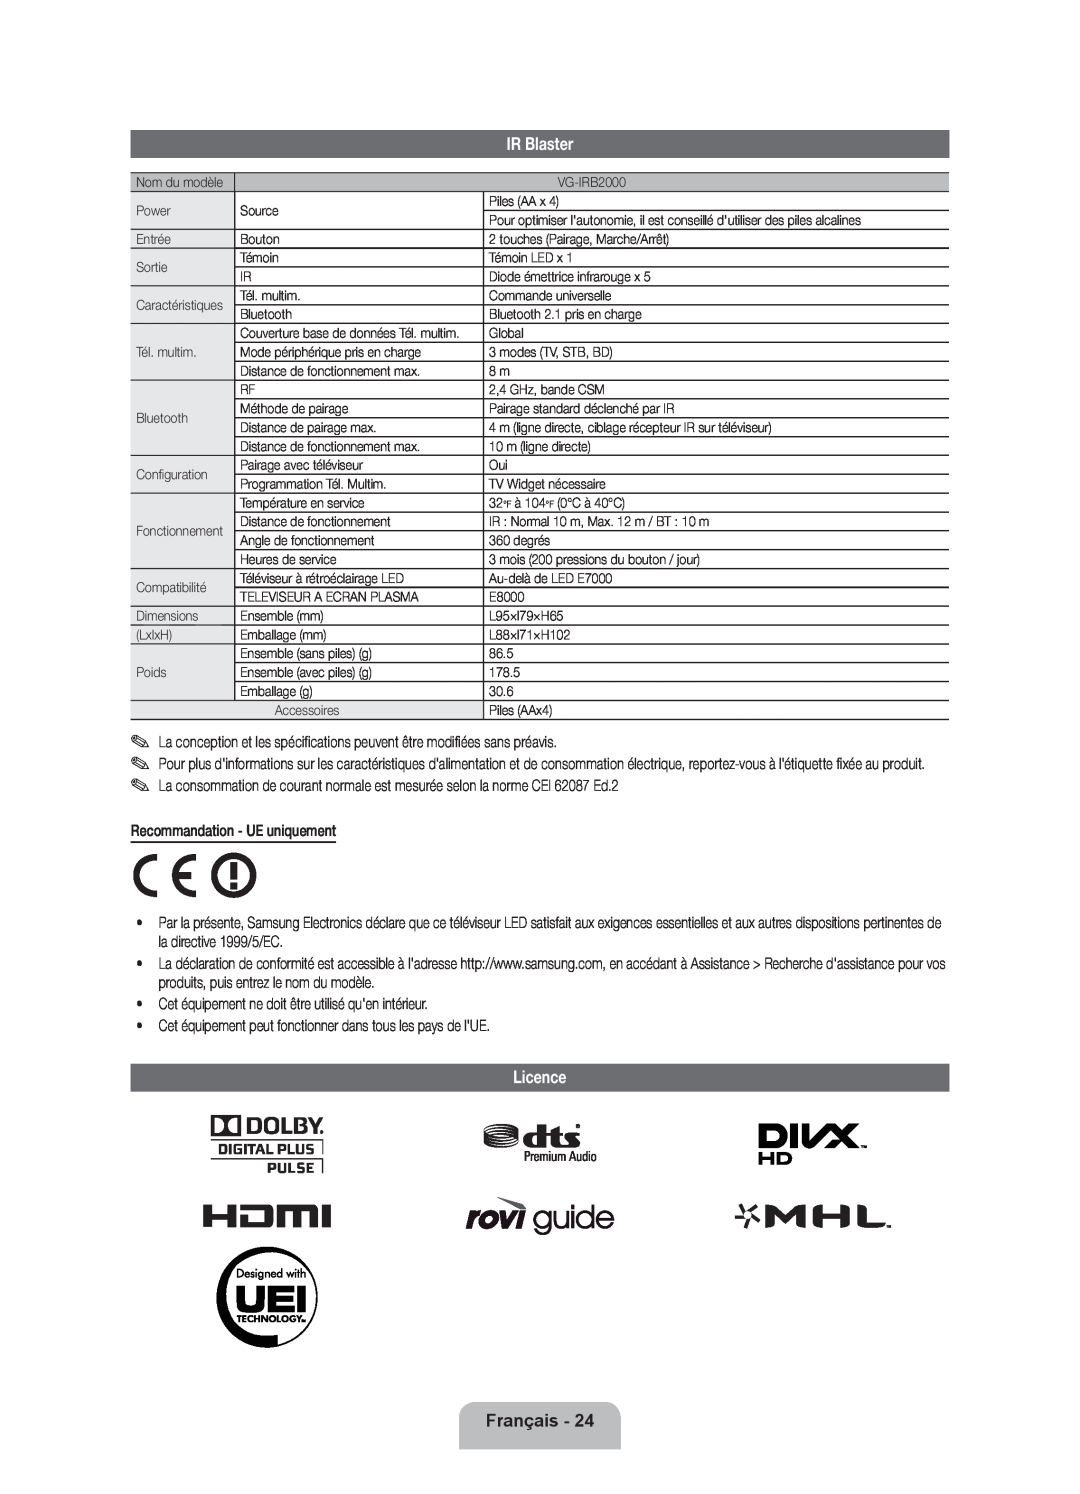 Samsung UE46ES7000SXXN, UE46D7090LSXZG, UE46ES7000SXXC manual IR Blaster, Licence, Français, Recommandation - UE uniquement 